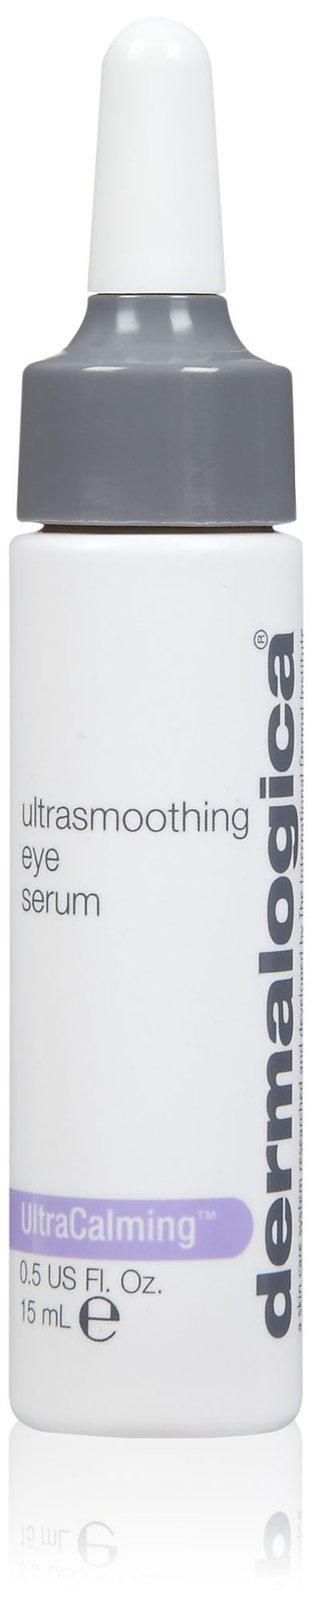 Dermalogica Ultracalming Ultrasmoothing Eye Serum